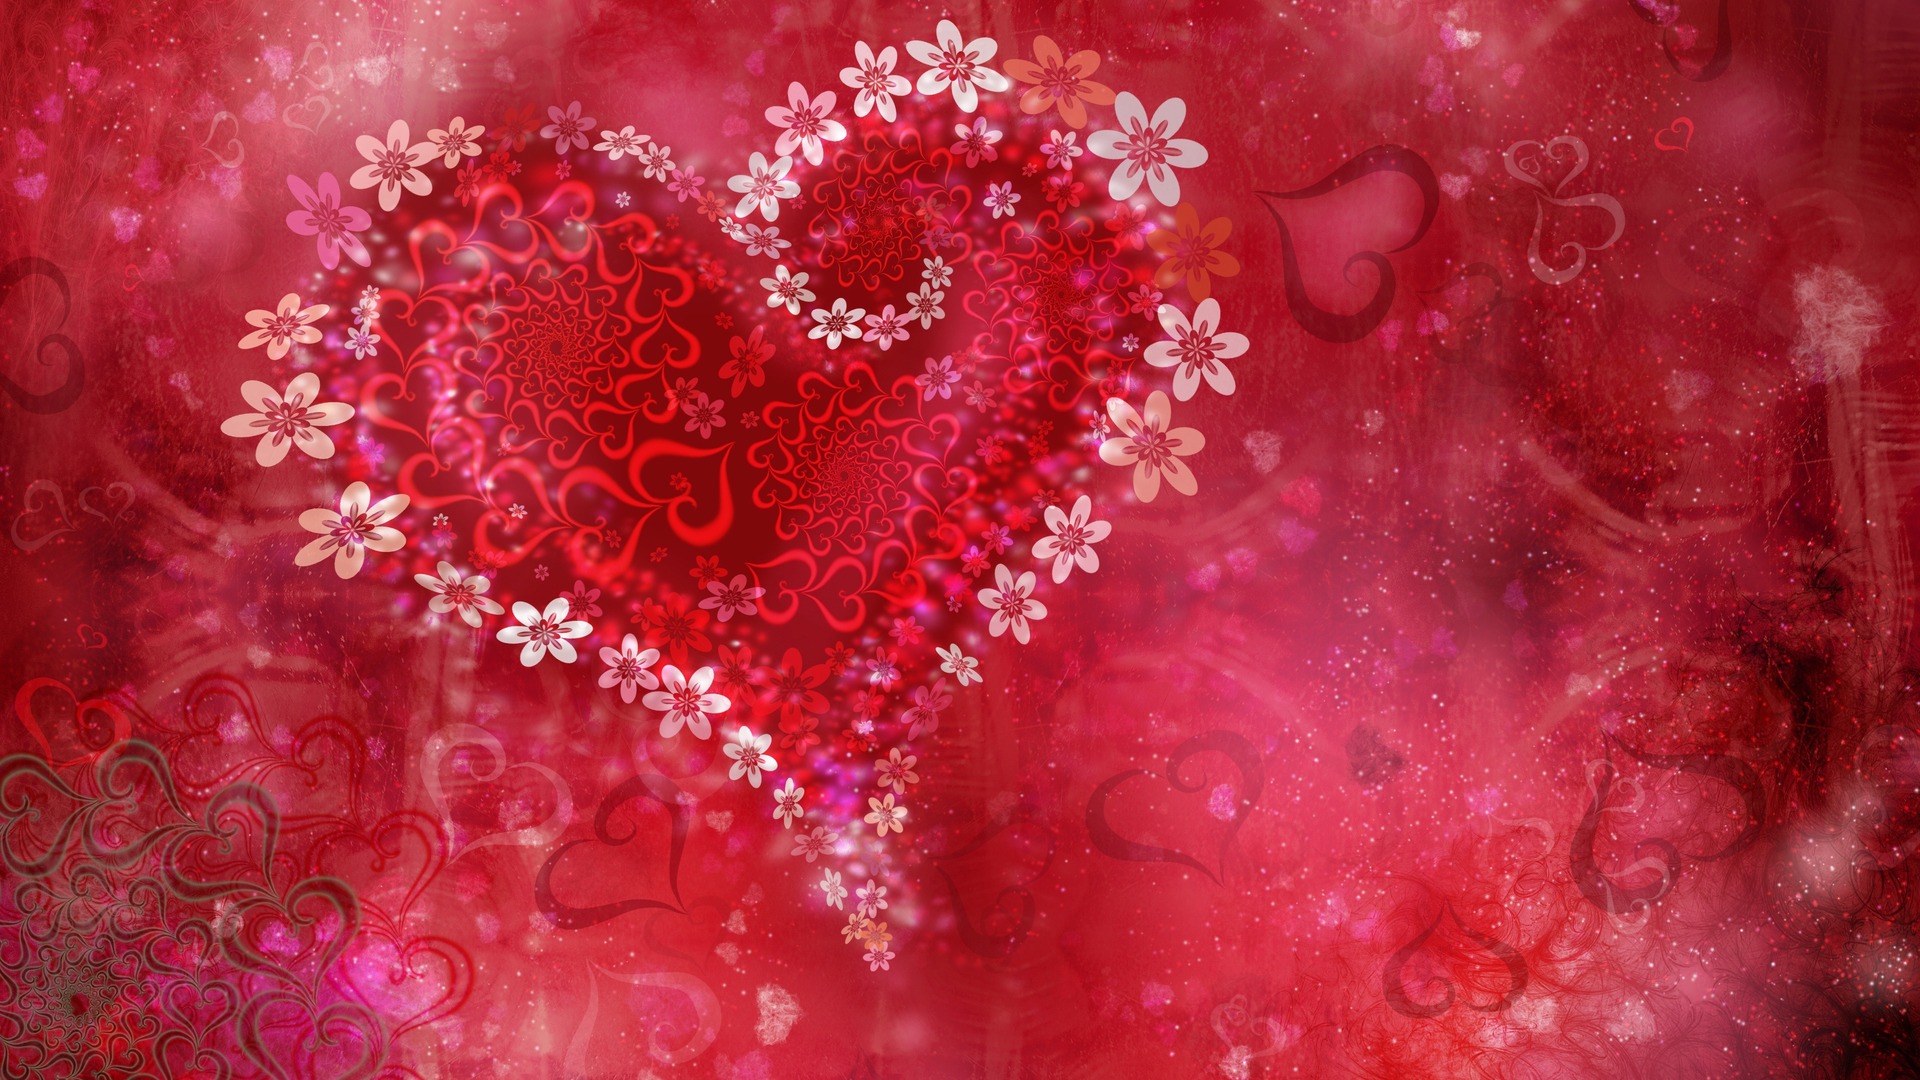 Love HD Pink Heart Flowers